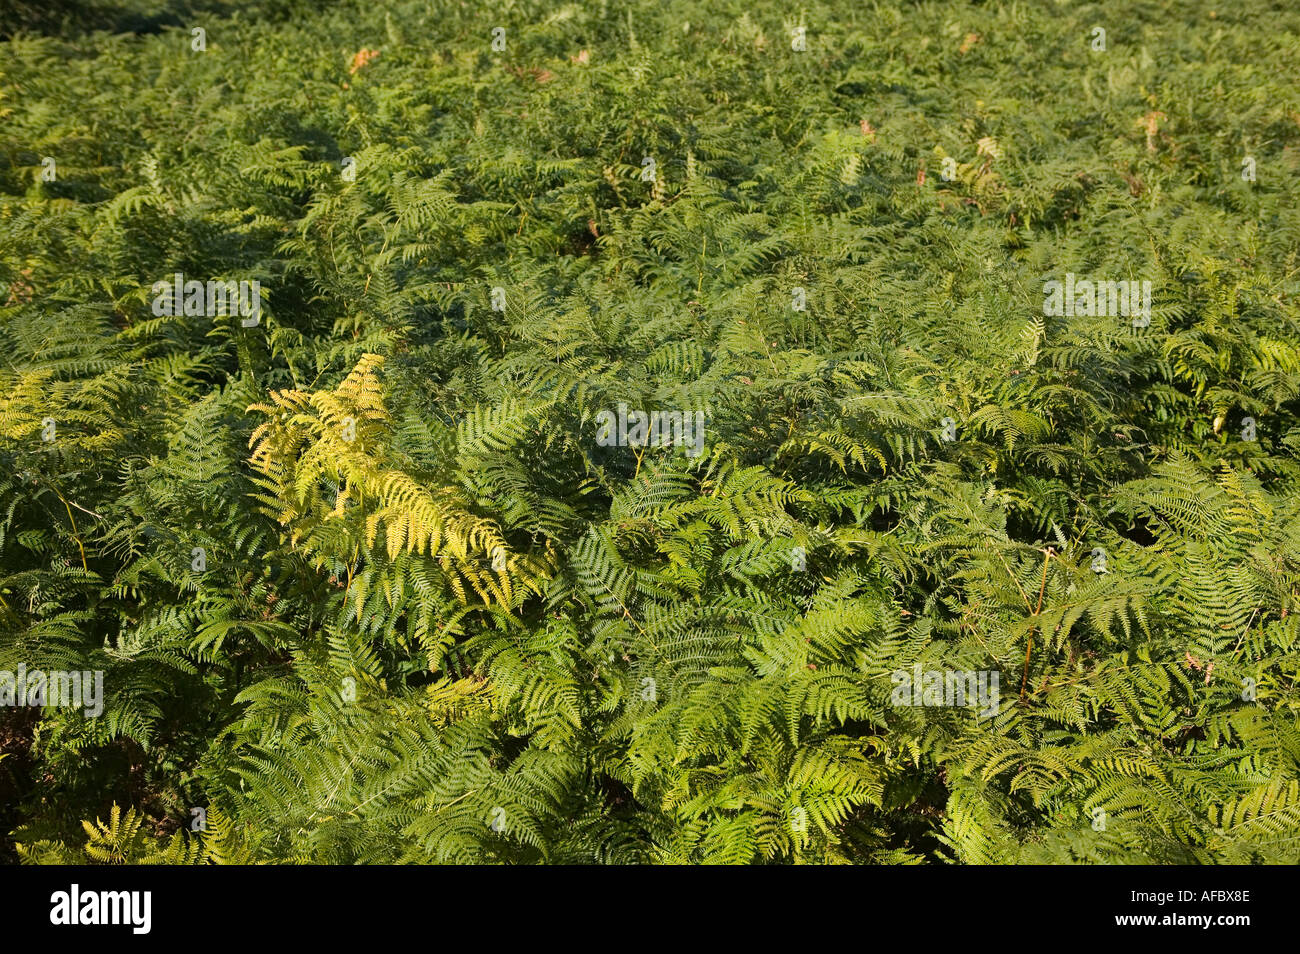 Pianta invasiva bracken Dryopteris felix mas felce maschio a copertura hillside Wales UK Foto Stock